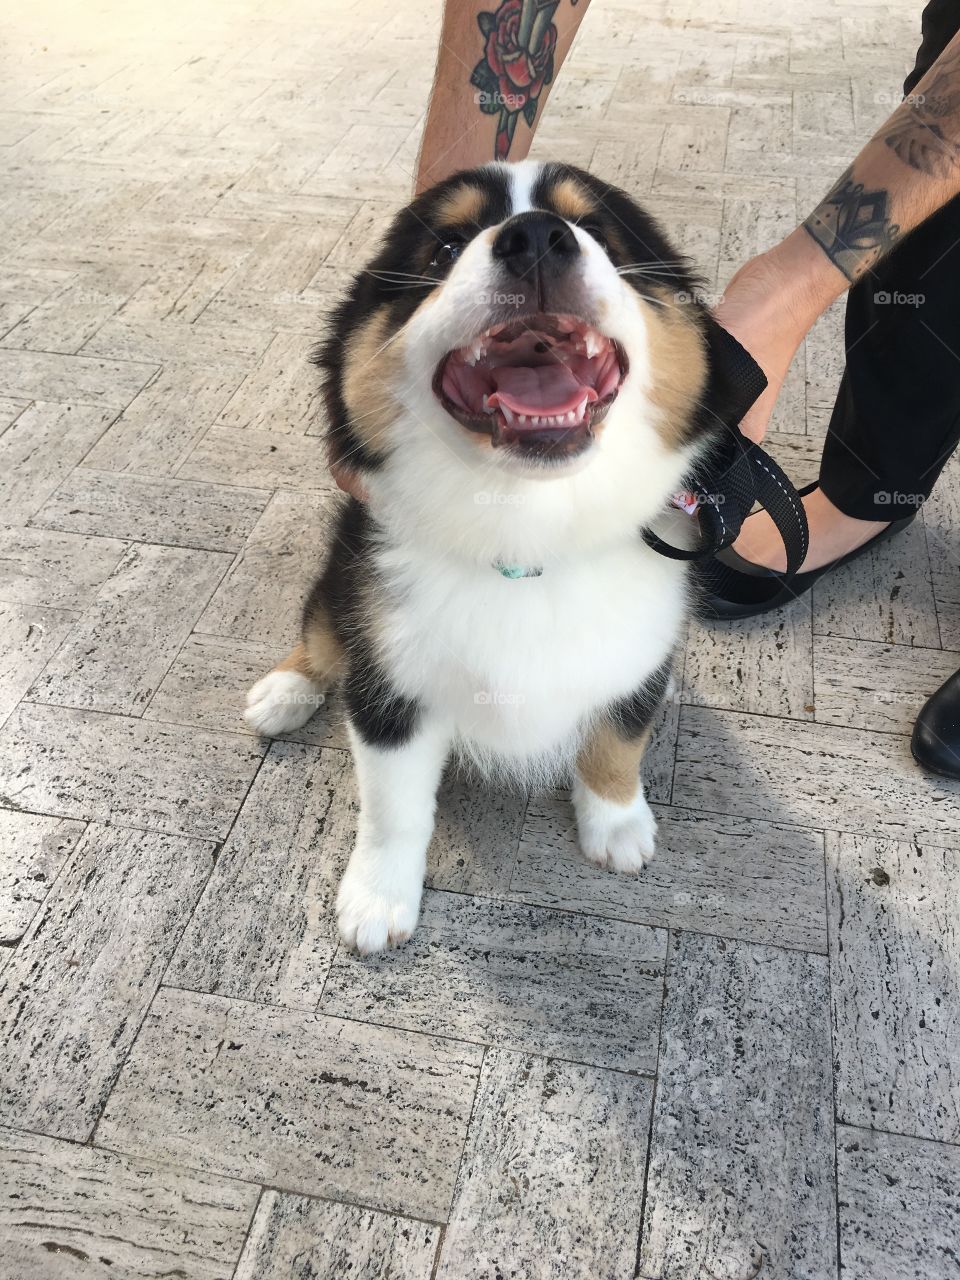 Such a happy sweet lil’ good boy